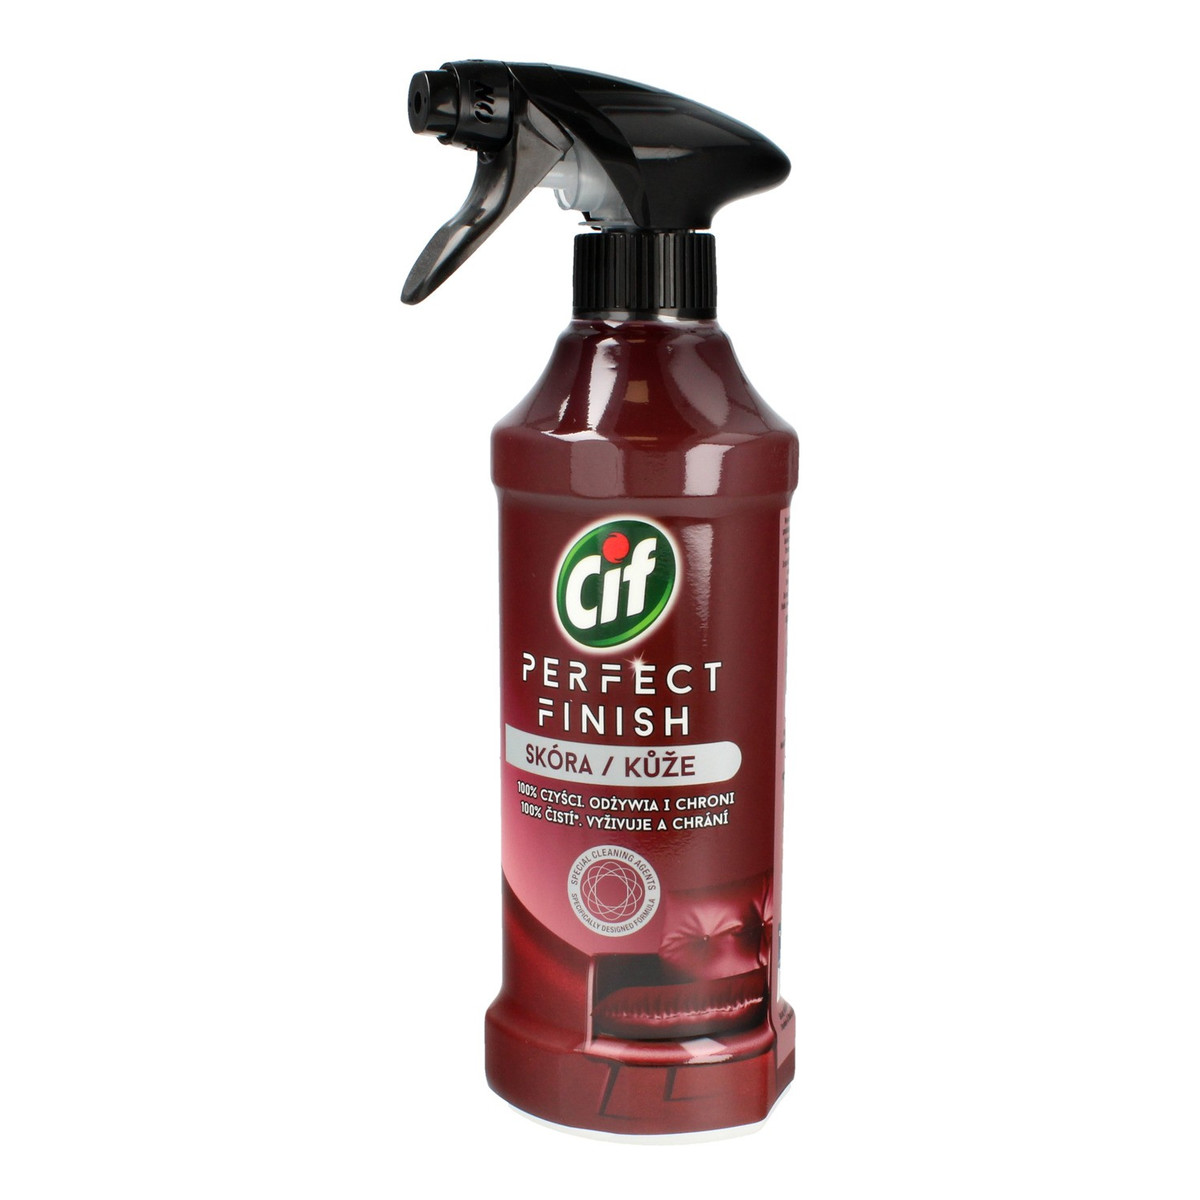 Cif Perfect Finish Spray do pielęgnacji skórzanych powierzchni 435ml